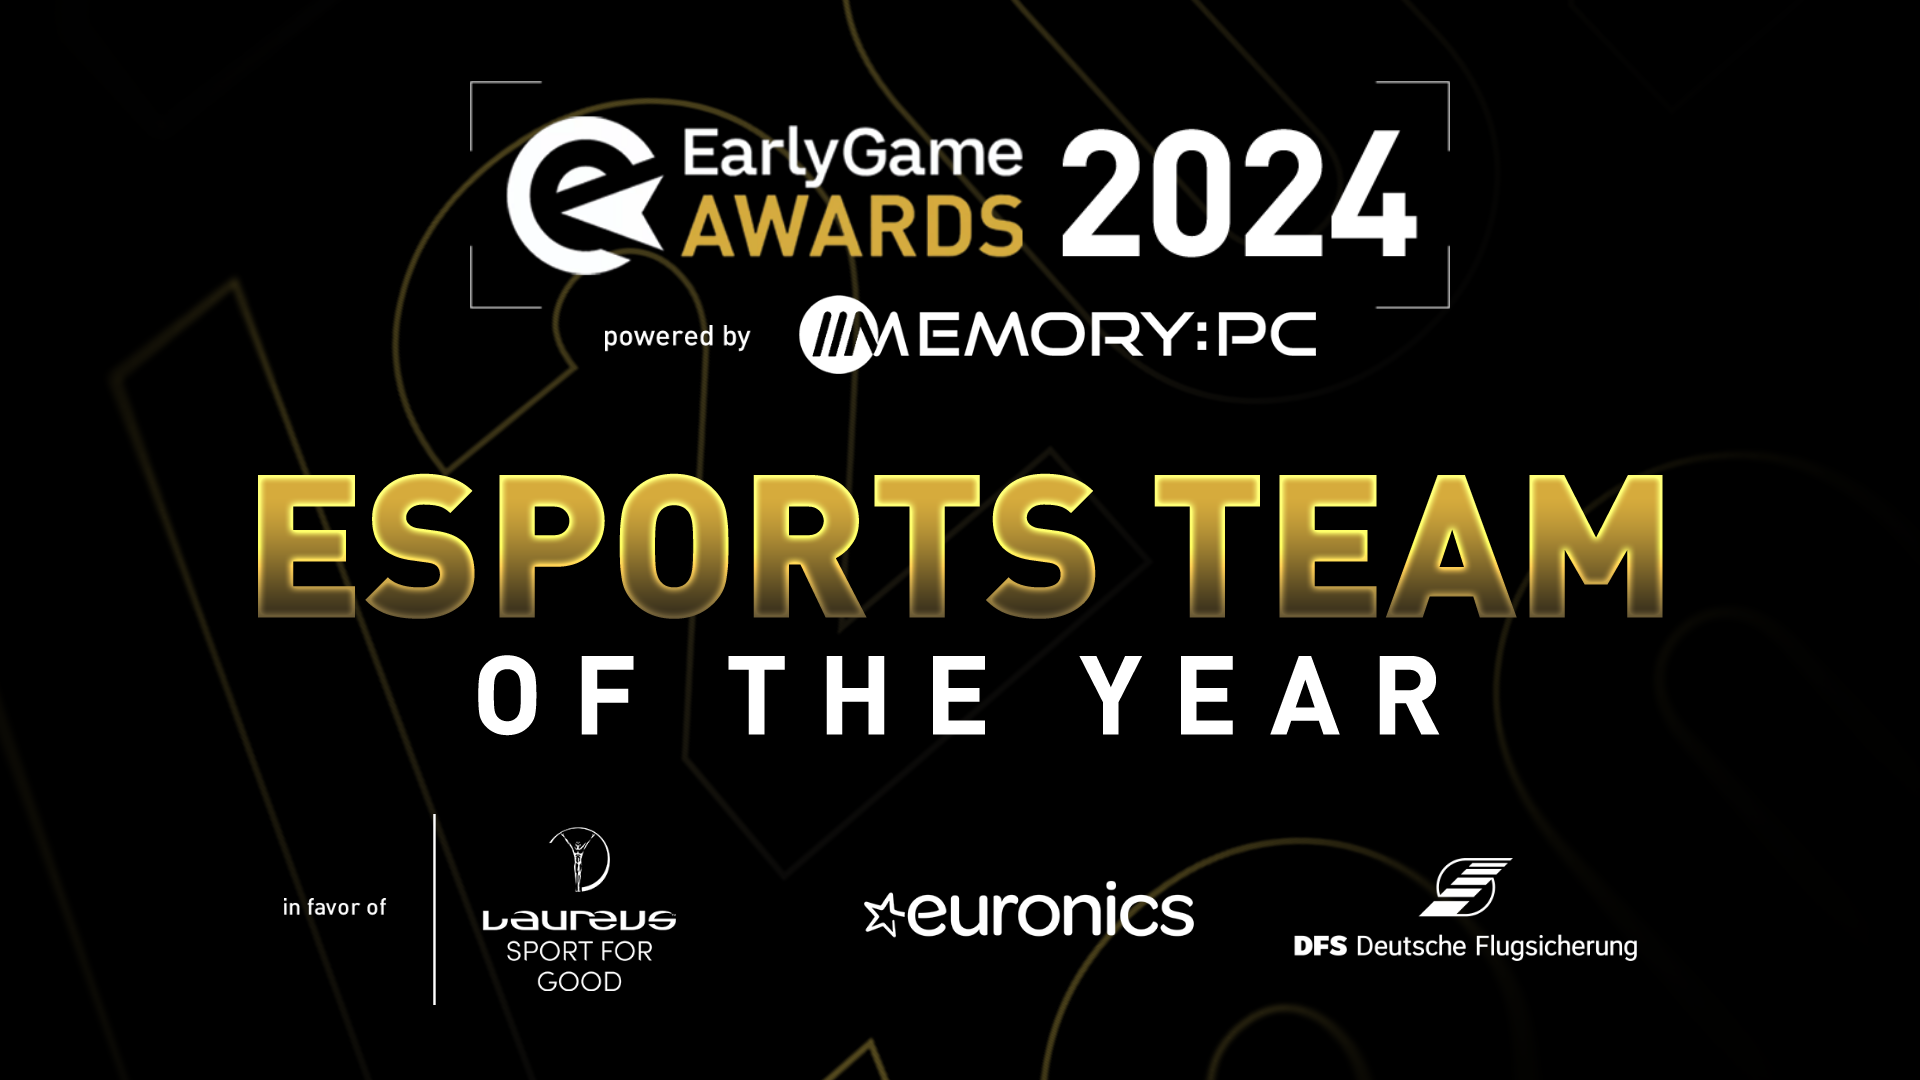 Eg awards 2024 esports team en